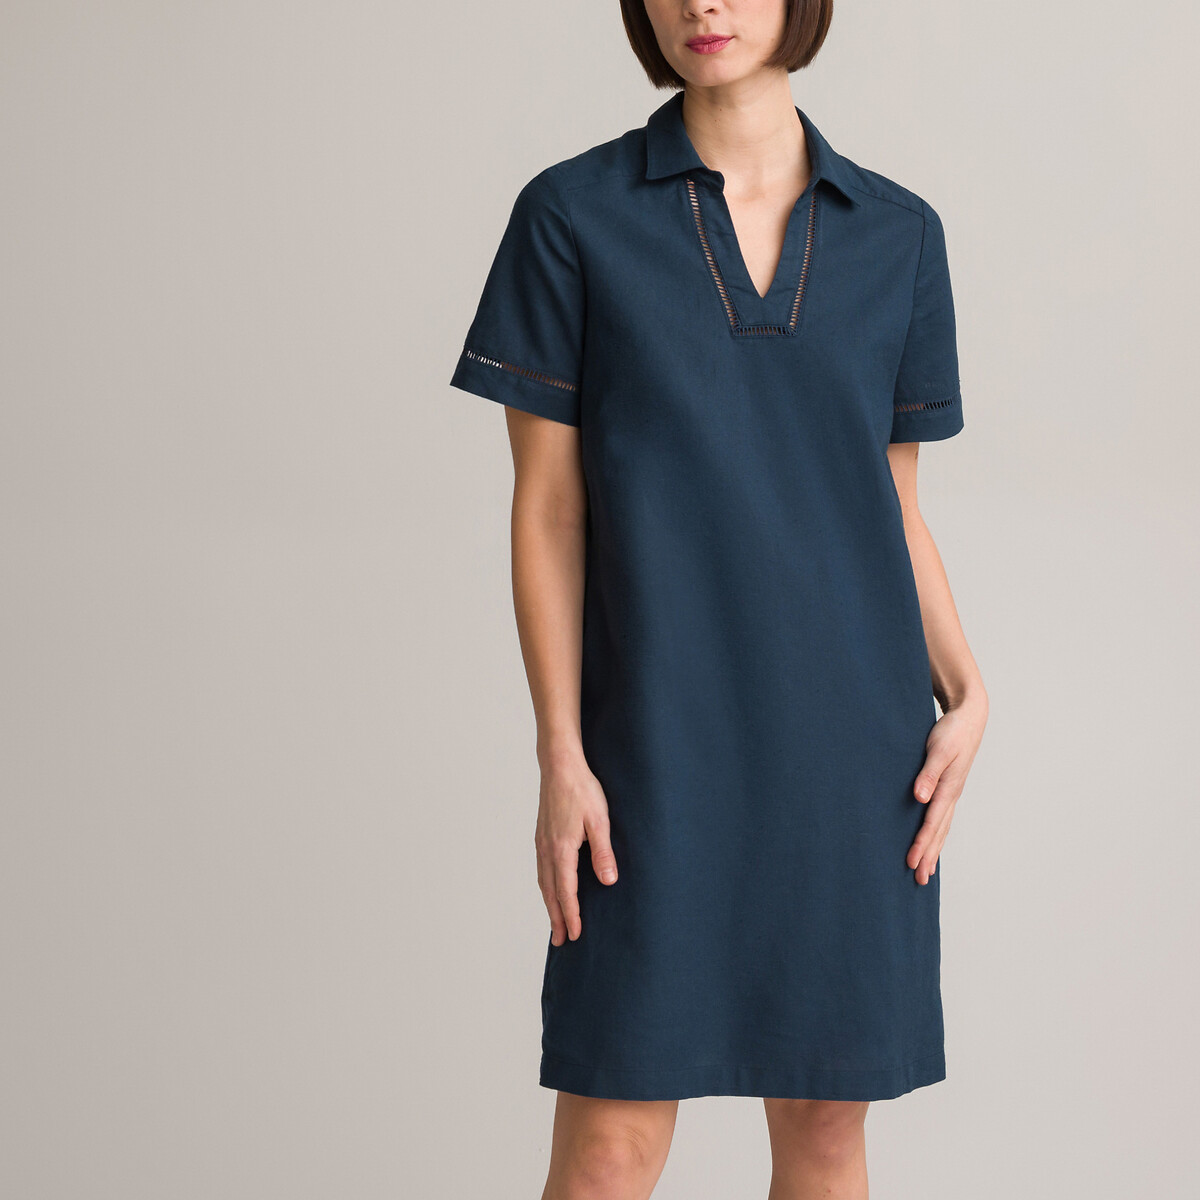 Платье-миди прямое с короткими рукавами 42 синий платье la redoute прямое двухцветное с короткими рукавами s черный